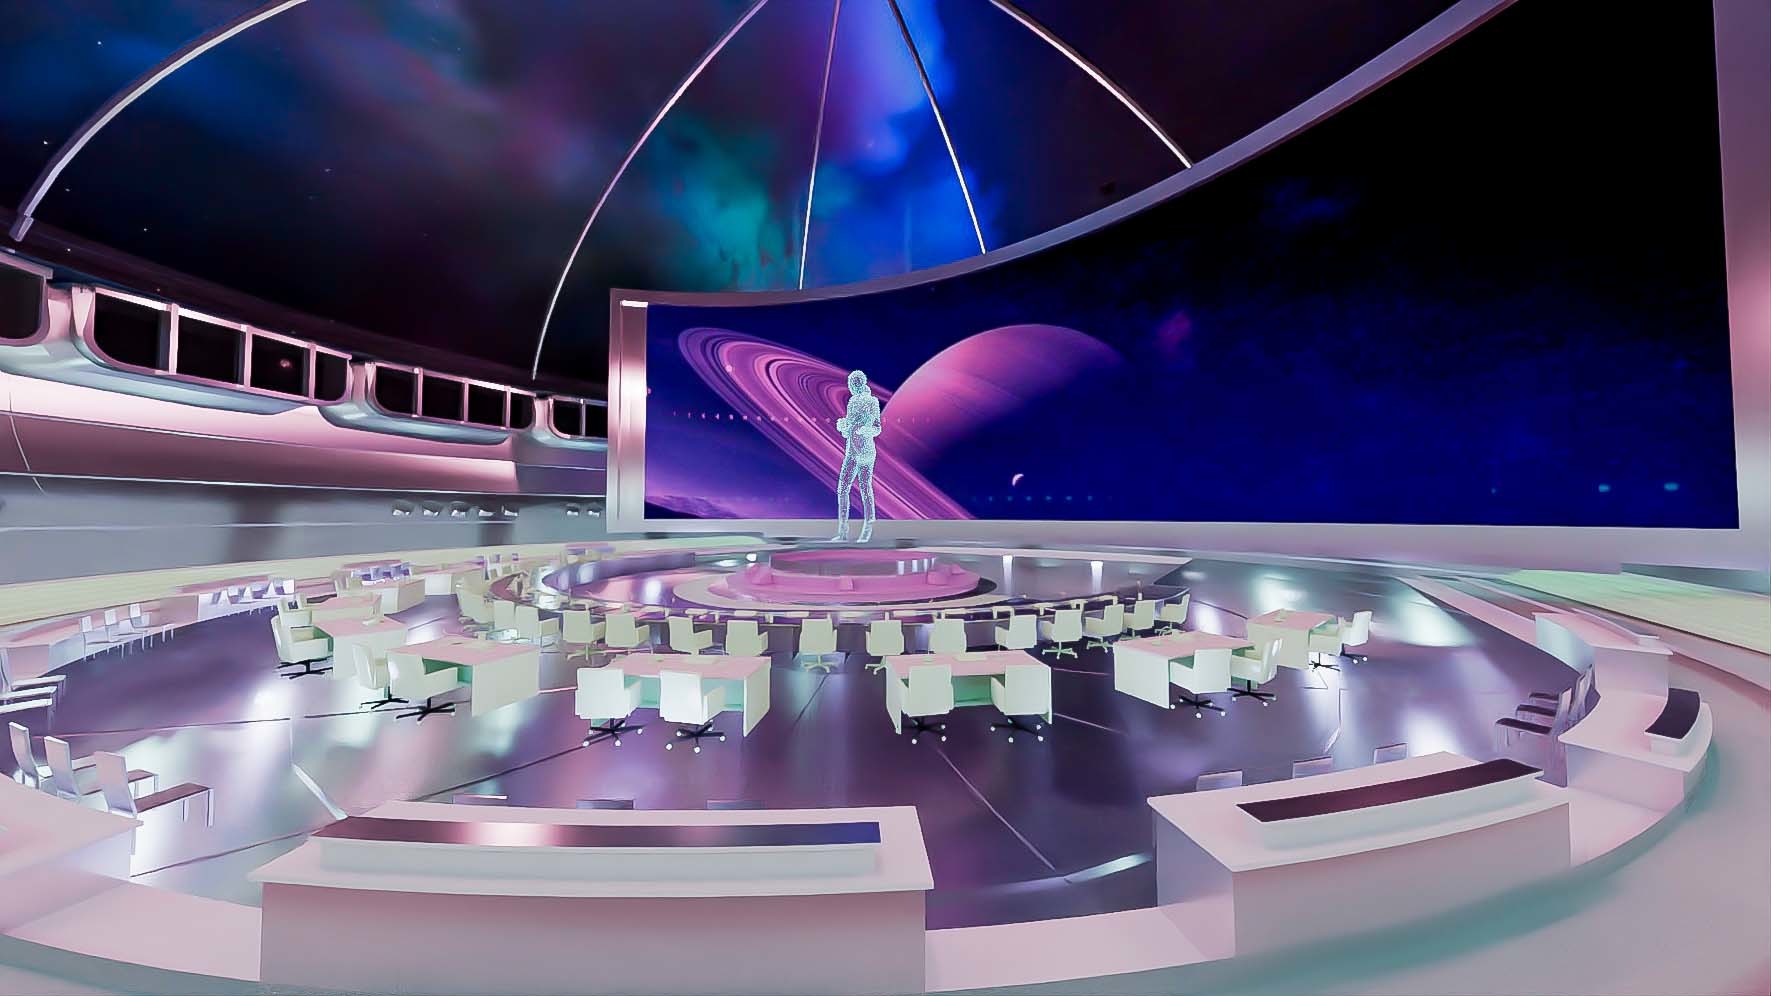 这是一张科幻风格的虚拟现实会议室图像，中心有全息图像，周围摆放着桌椅，背景是宇宙星空和行星。